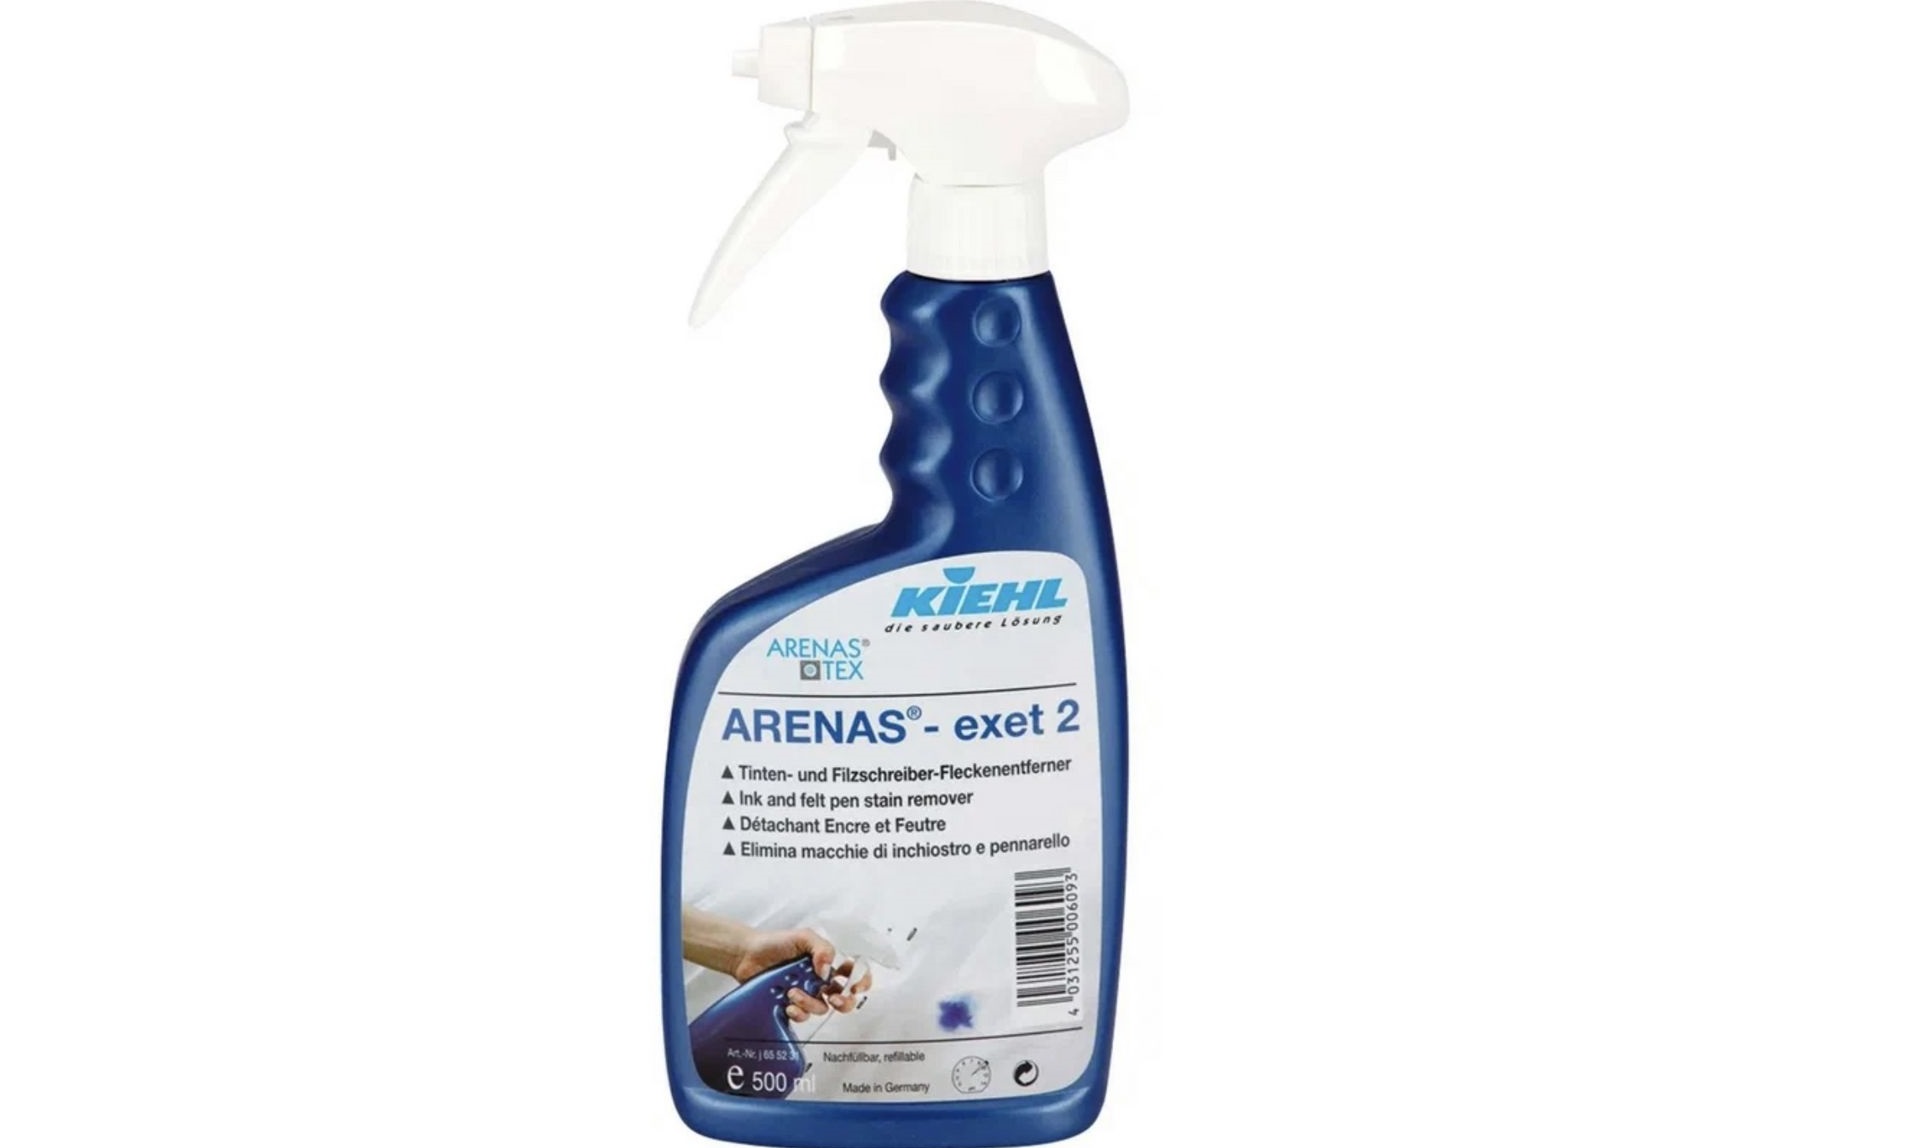 removedor de manchas enzimático Kiehl-ARENAS-exet